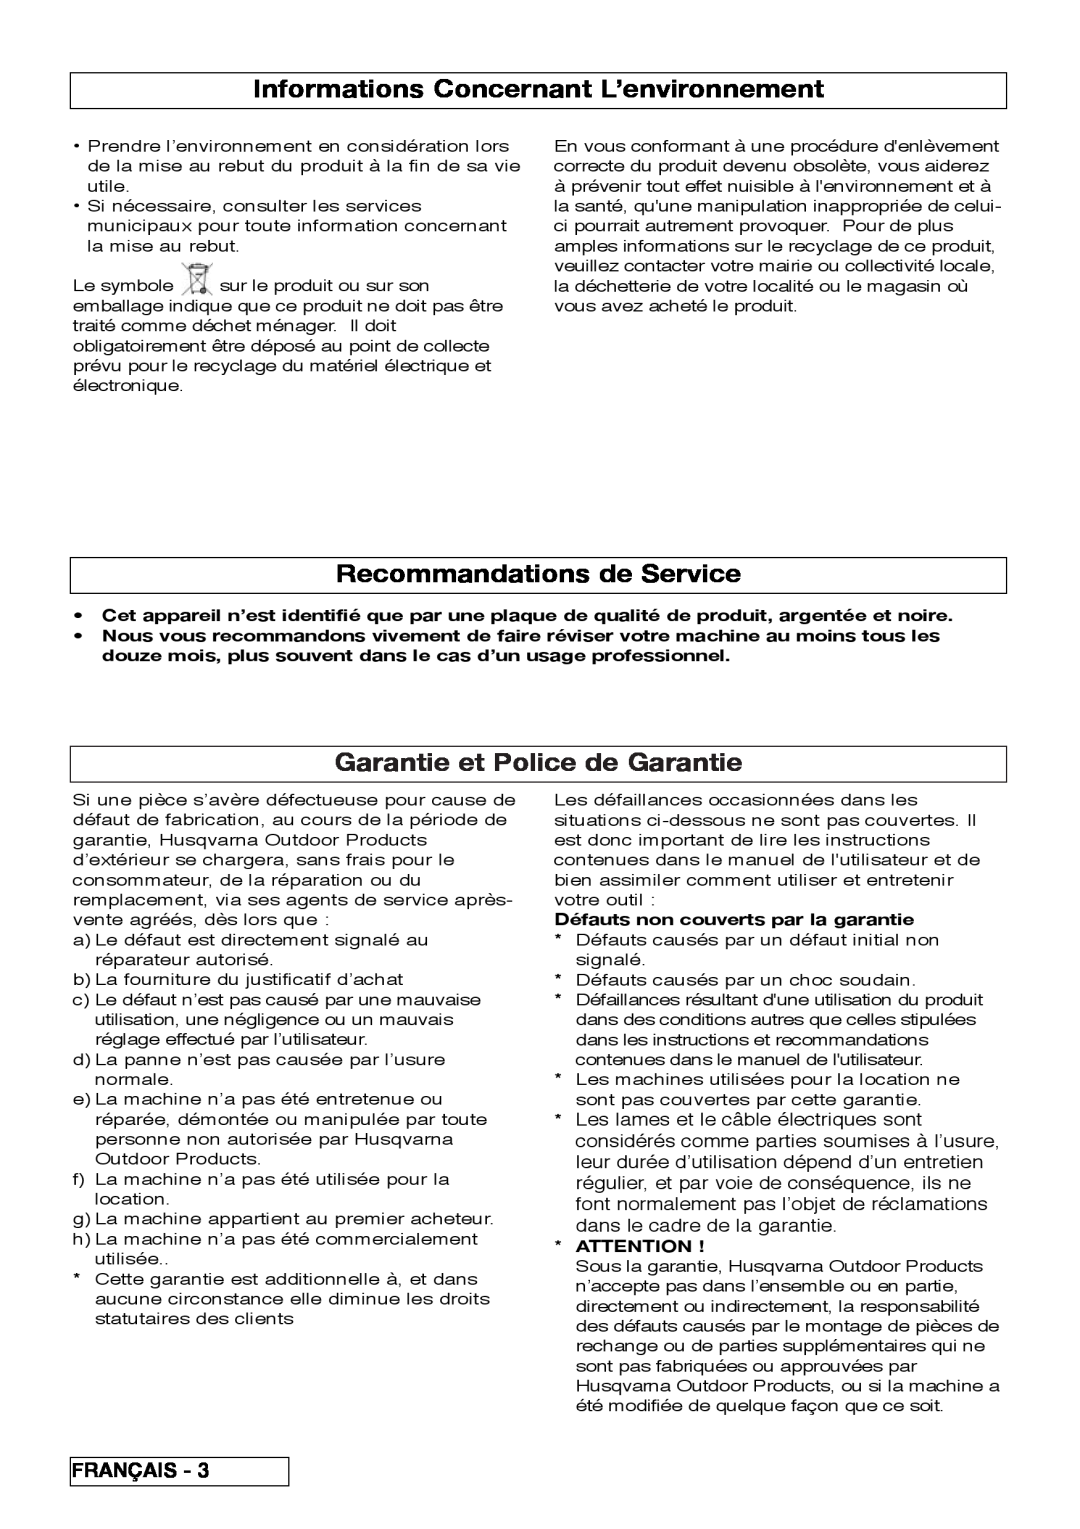 Flymo VM032 Informations Concernant L’environnement, Recommandations de Service, Garantie et Police de Garantie, Français 